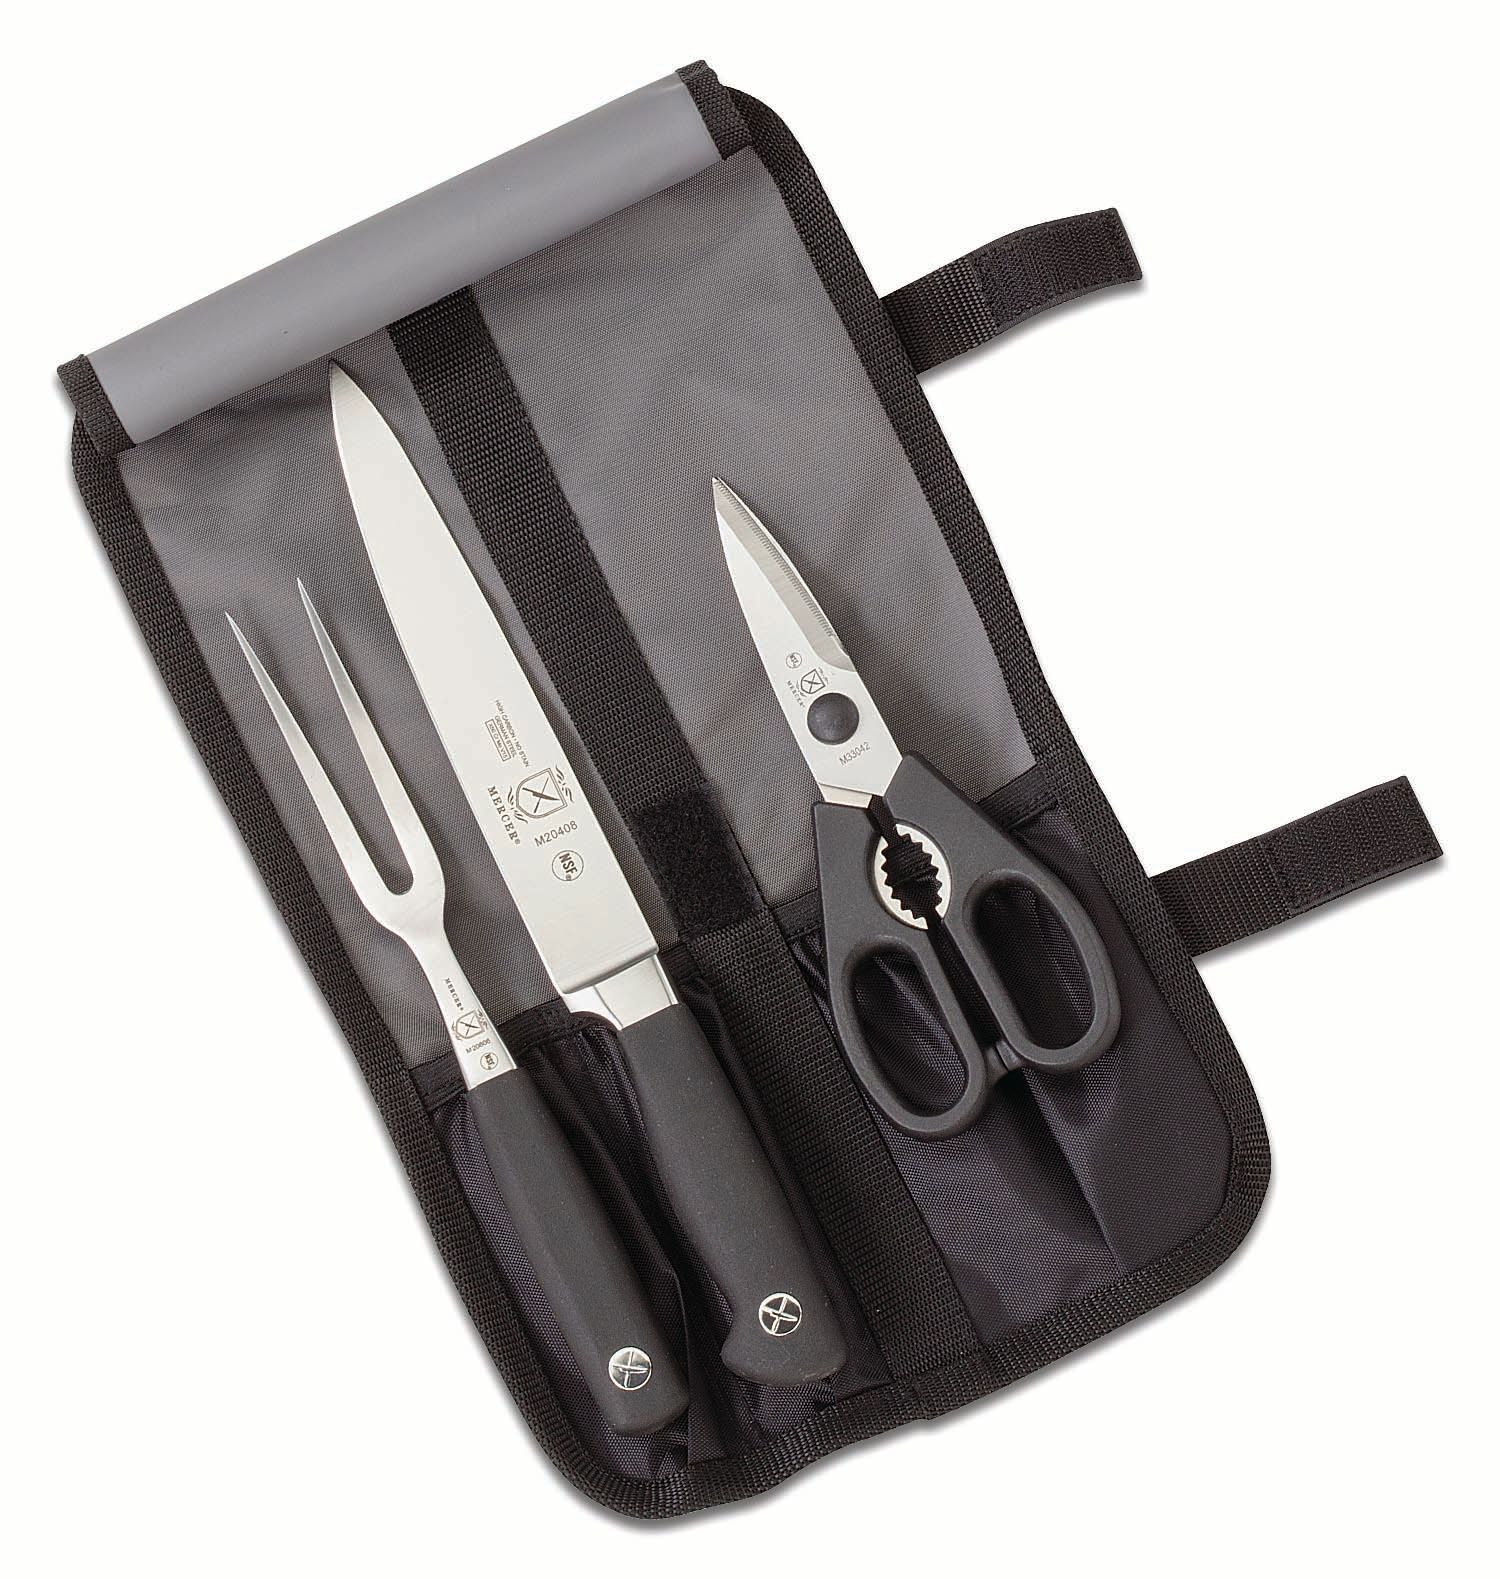 Mercer Cutlery Genesis 10'' Carving Knife